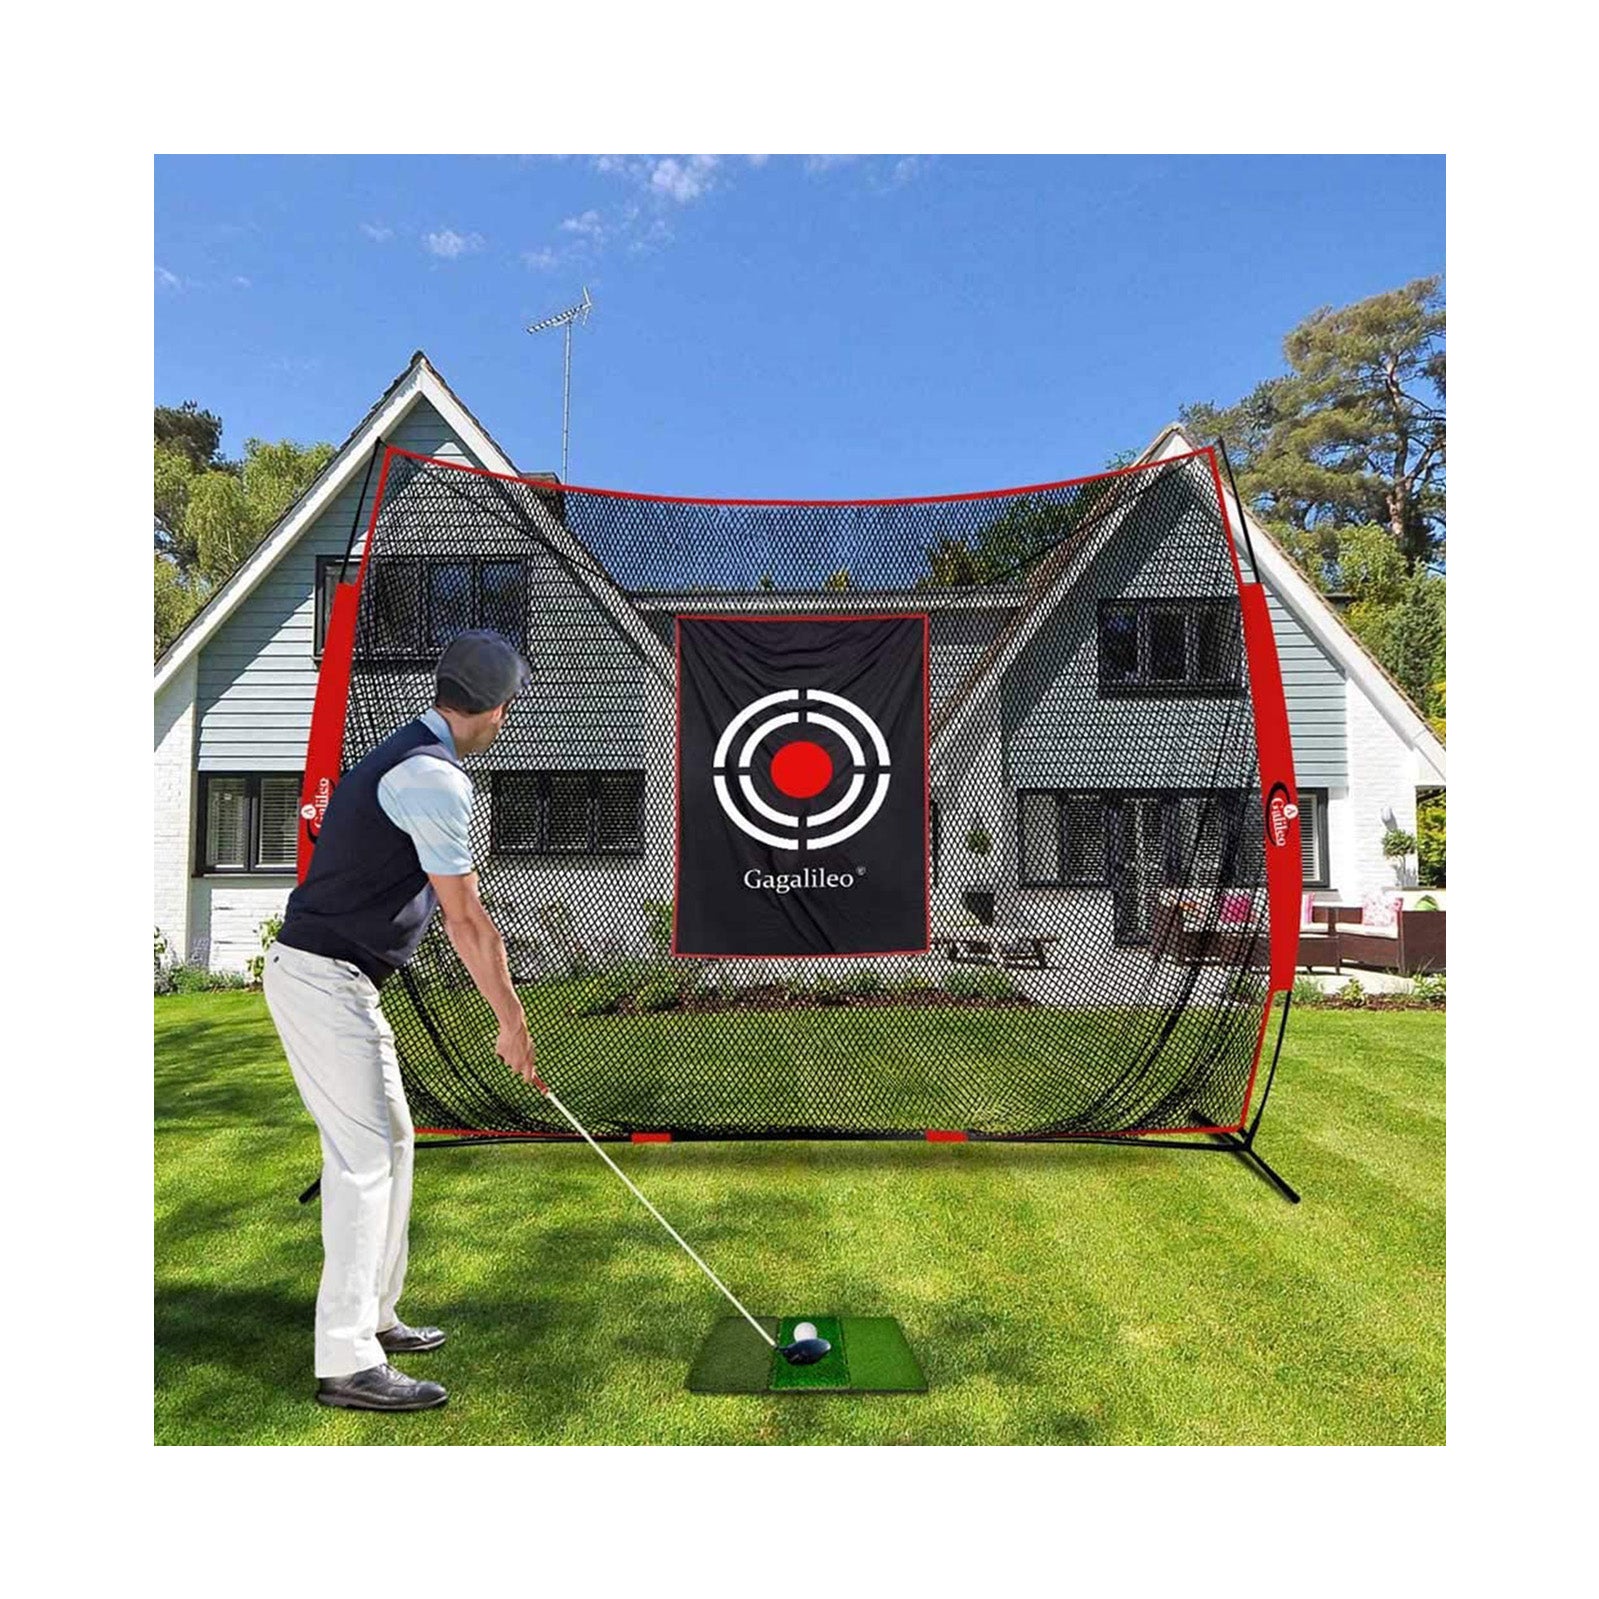 Redes de golf Redes de practica de golf Redes de golpeo de golf Campo de practicas de golf para uso en interiores| 10X8FT| deportes galileo